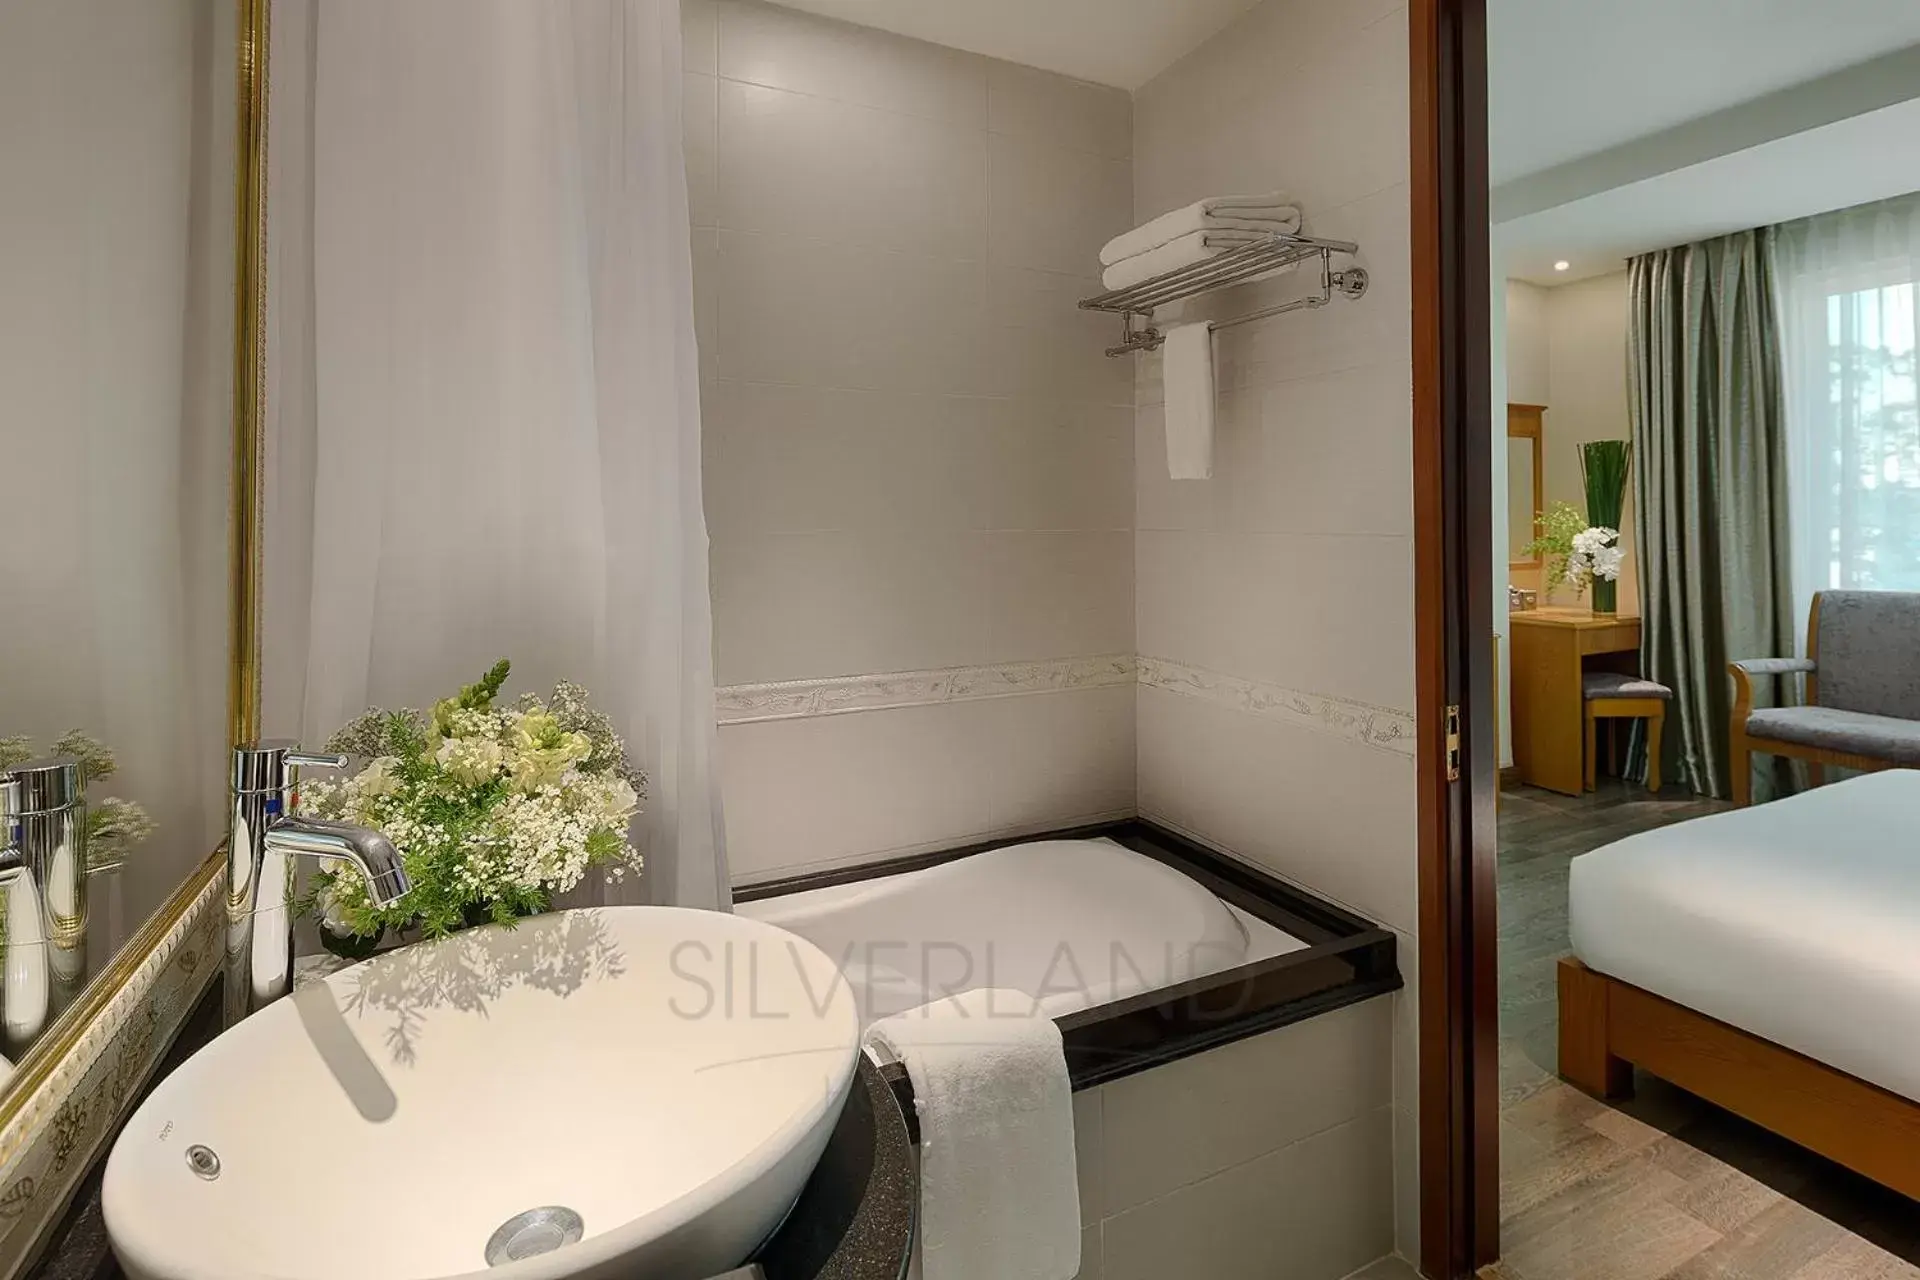 Bathroom in Silverland Sil Hotel & Spa